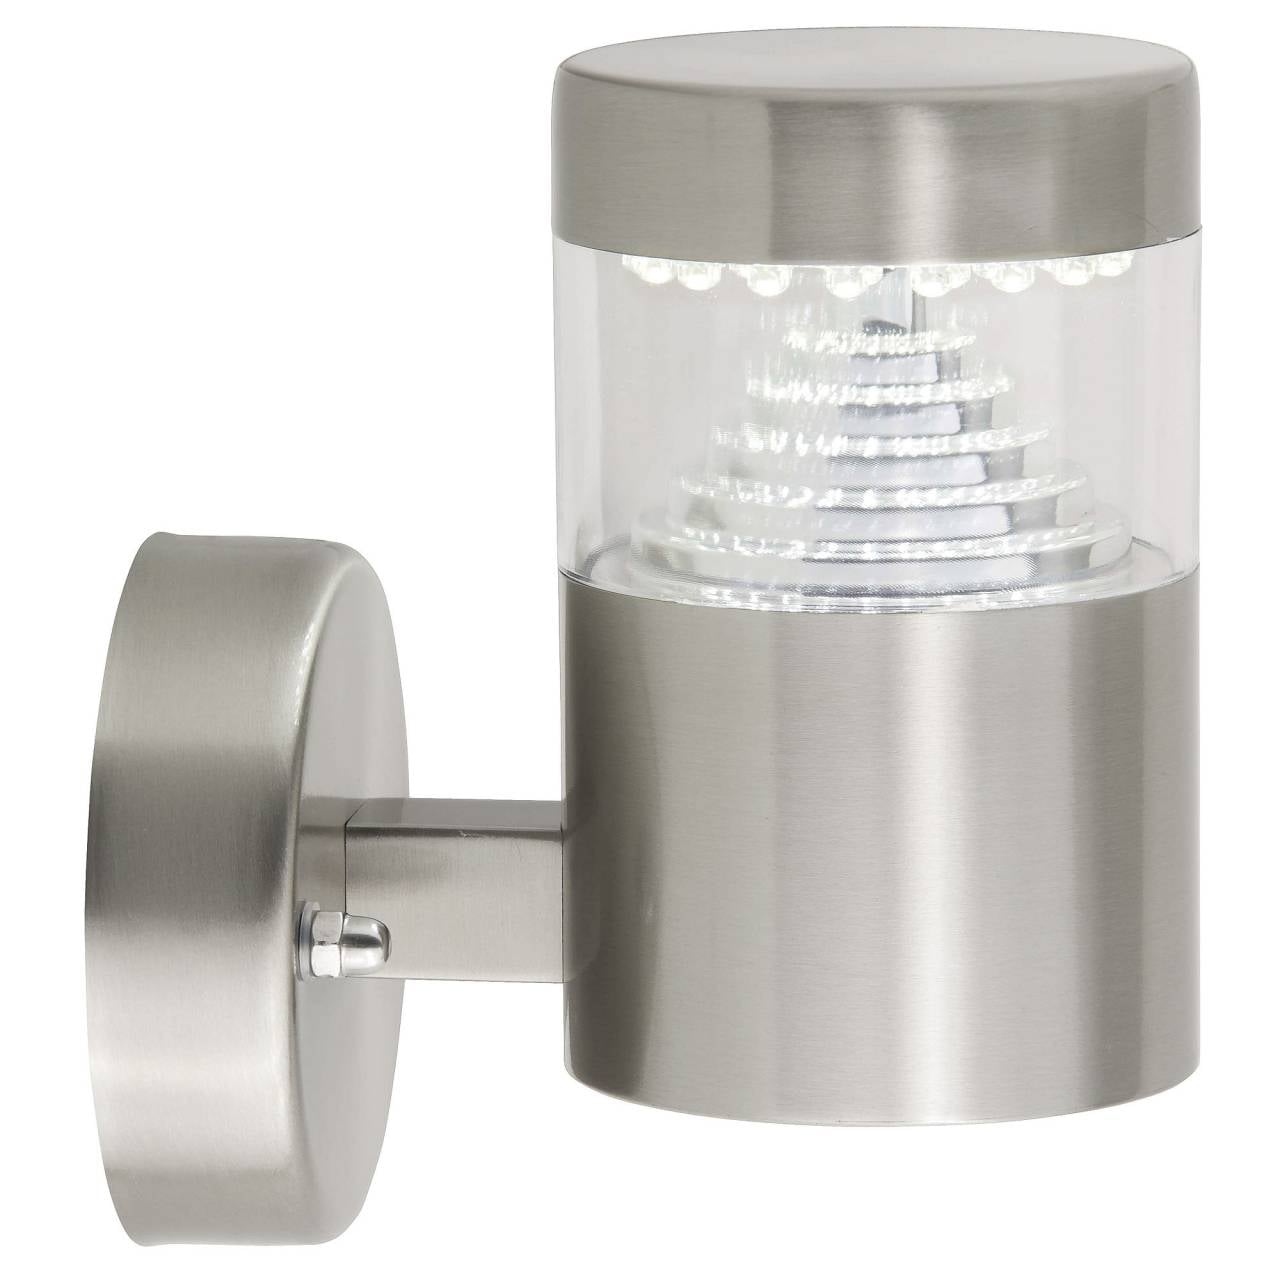 BRILLIANT Lampe Avon LED Außenwandleuchte stehend edelstahl   1x 6W LED integriert (SMD), (180lm, 6500K)   IP-Schutzart: